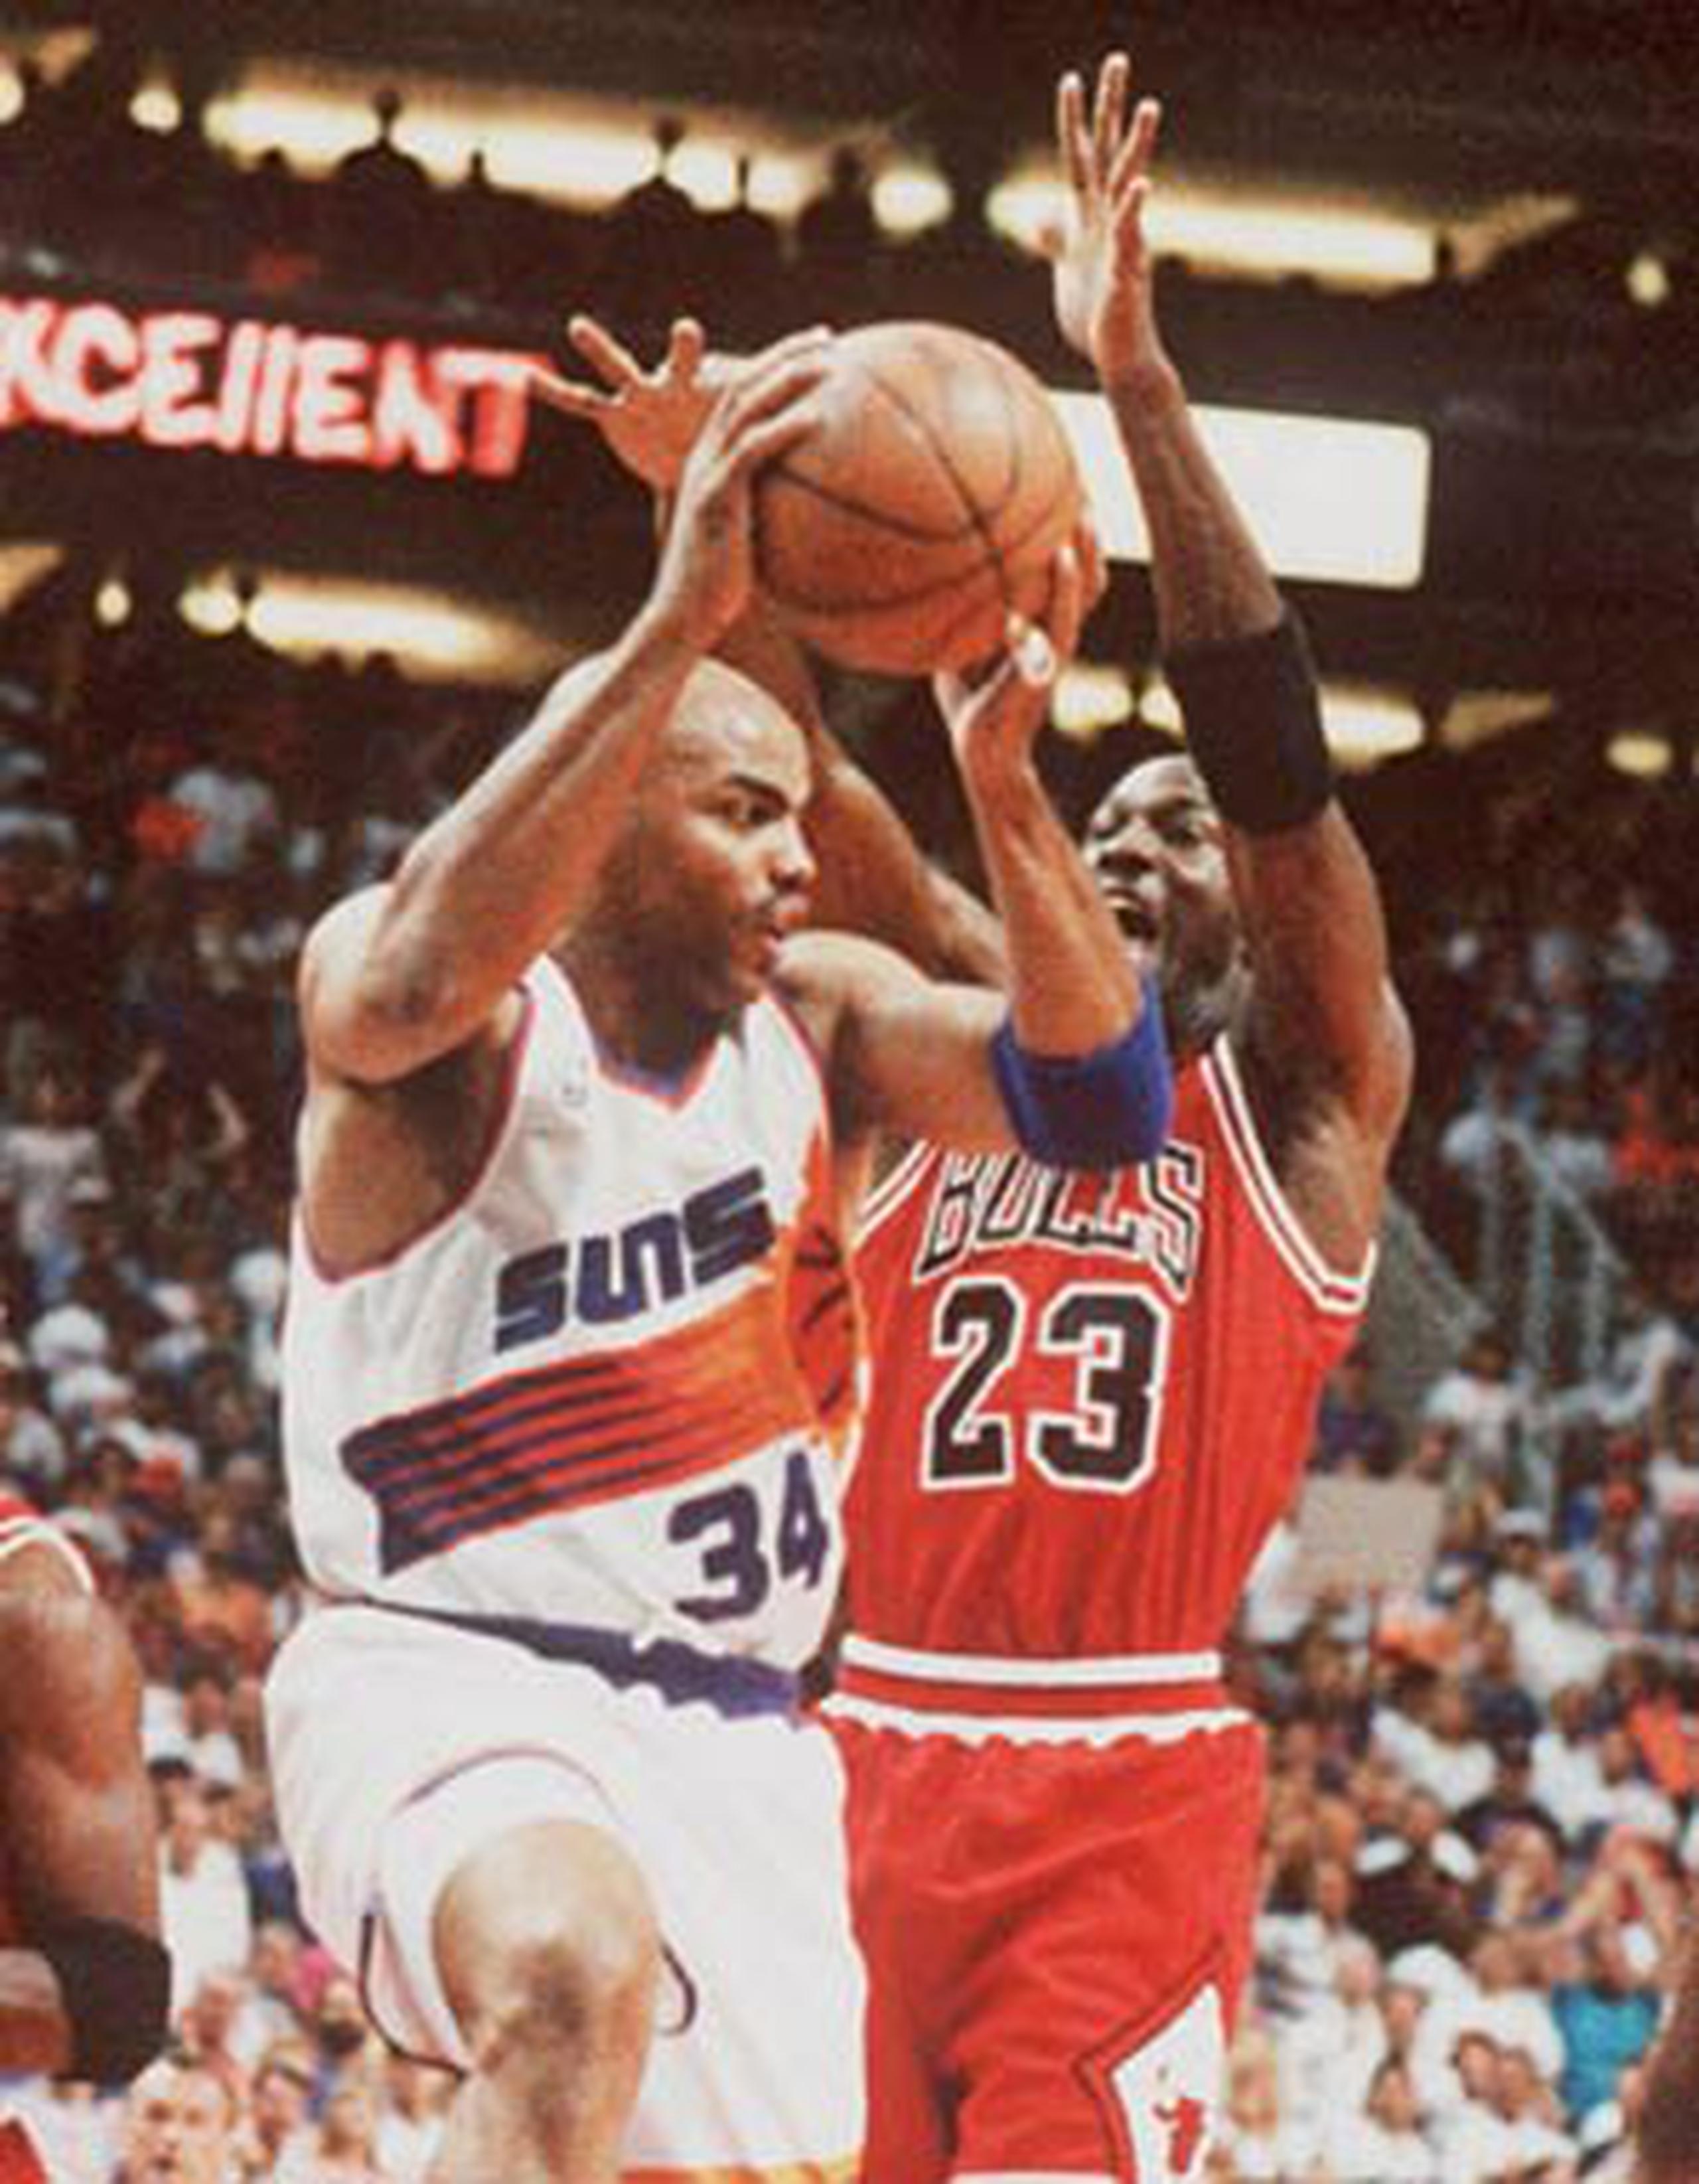 "Aquel equipo de Bulls mataría a este pequeño equipo", dijo Barkley, quién aquí aparece junto a Michael Jordan. (Archivo)